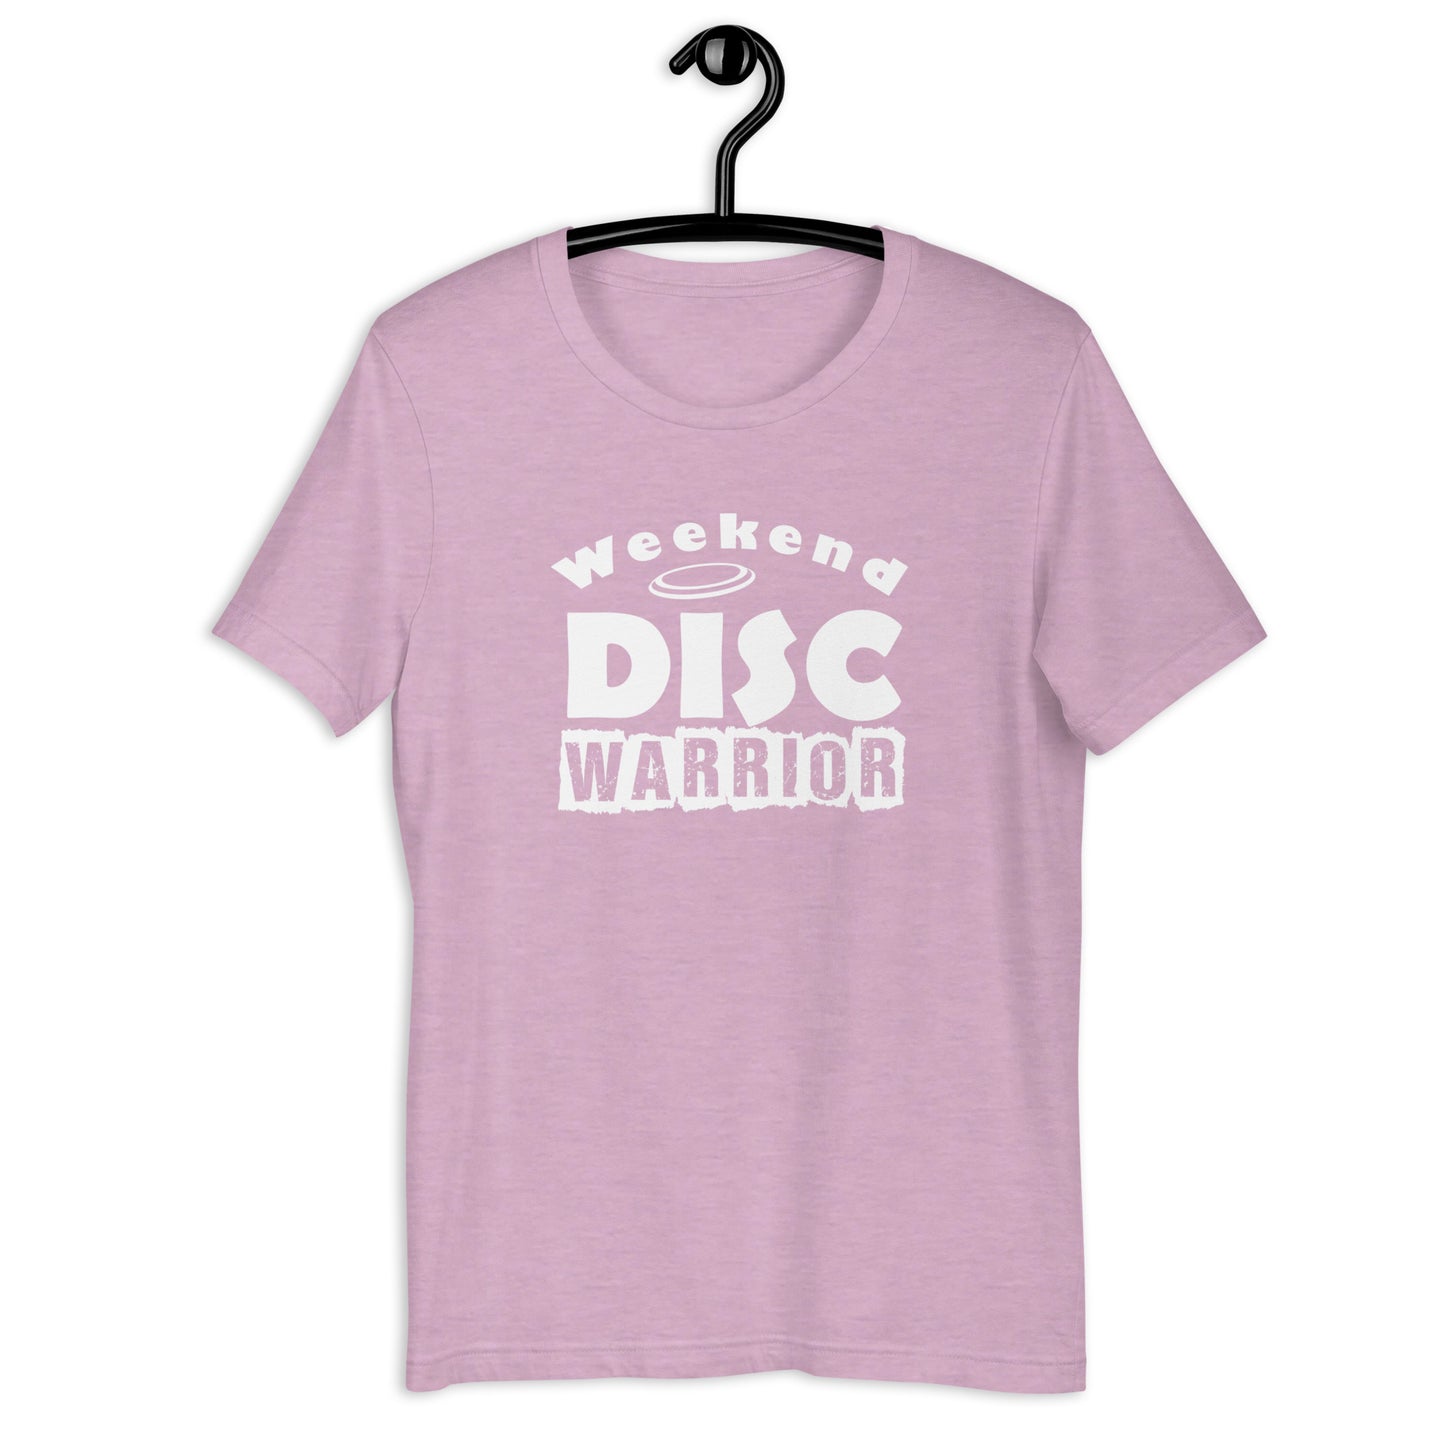 WEEKEND DISC WARRIOR - Unisex t-shirt